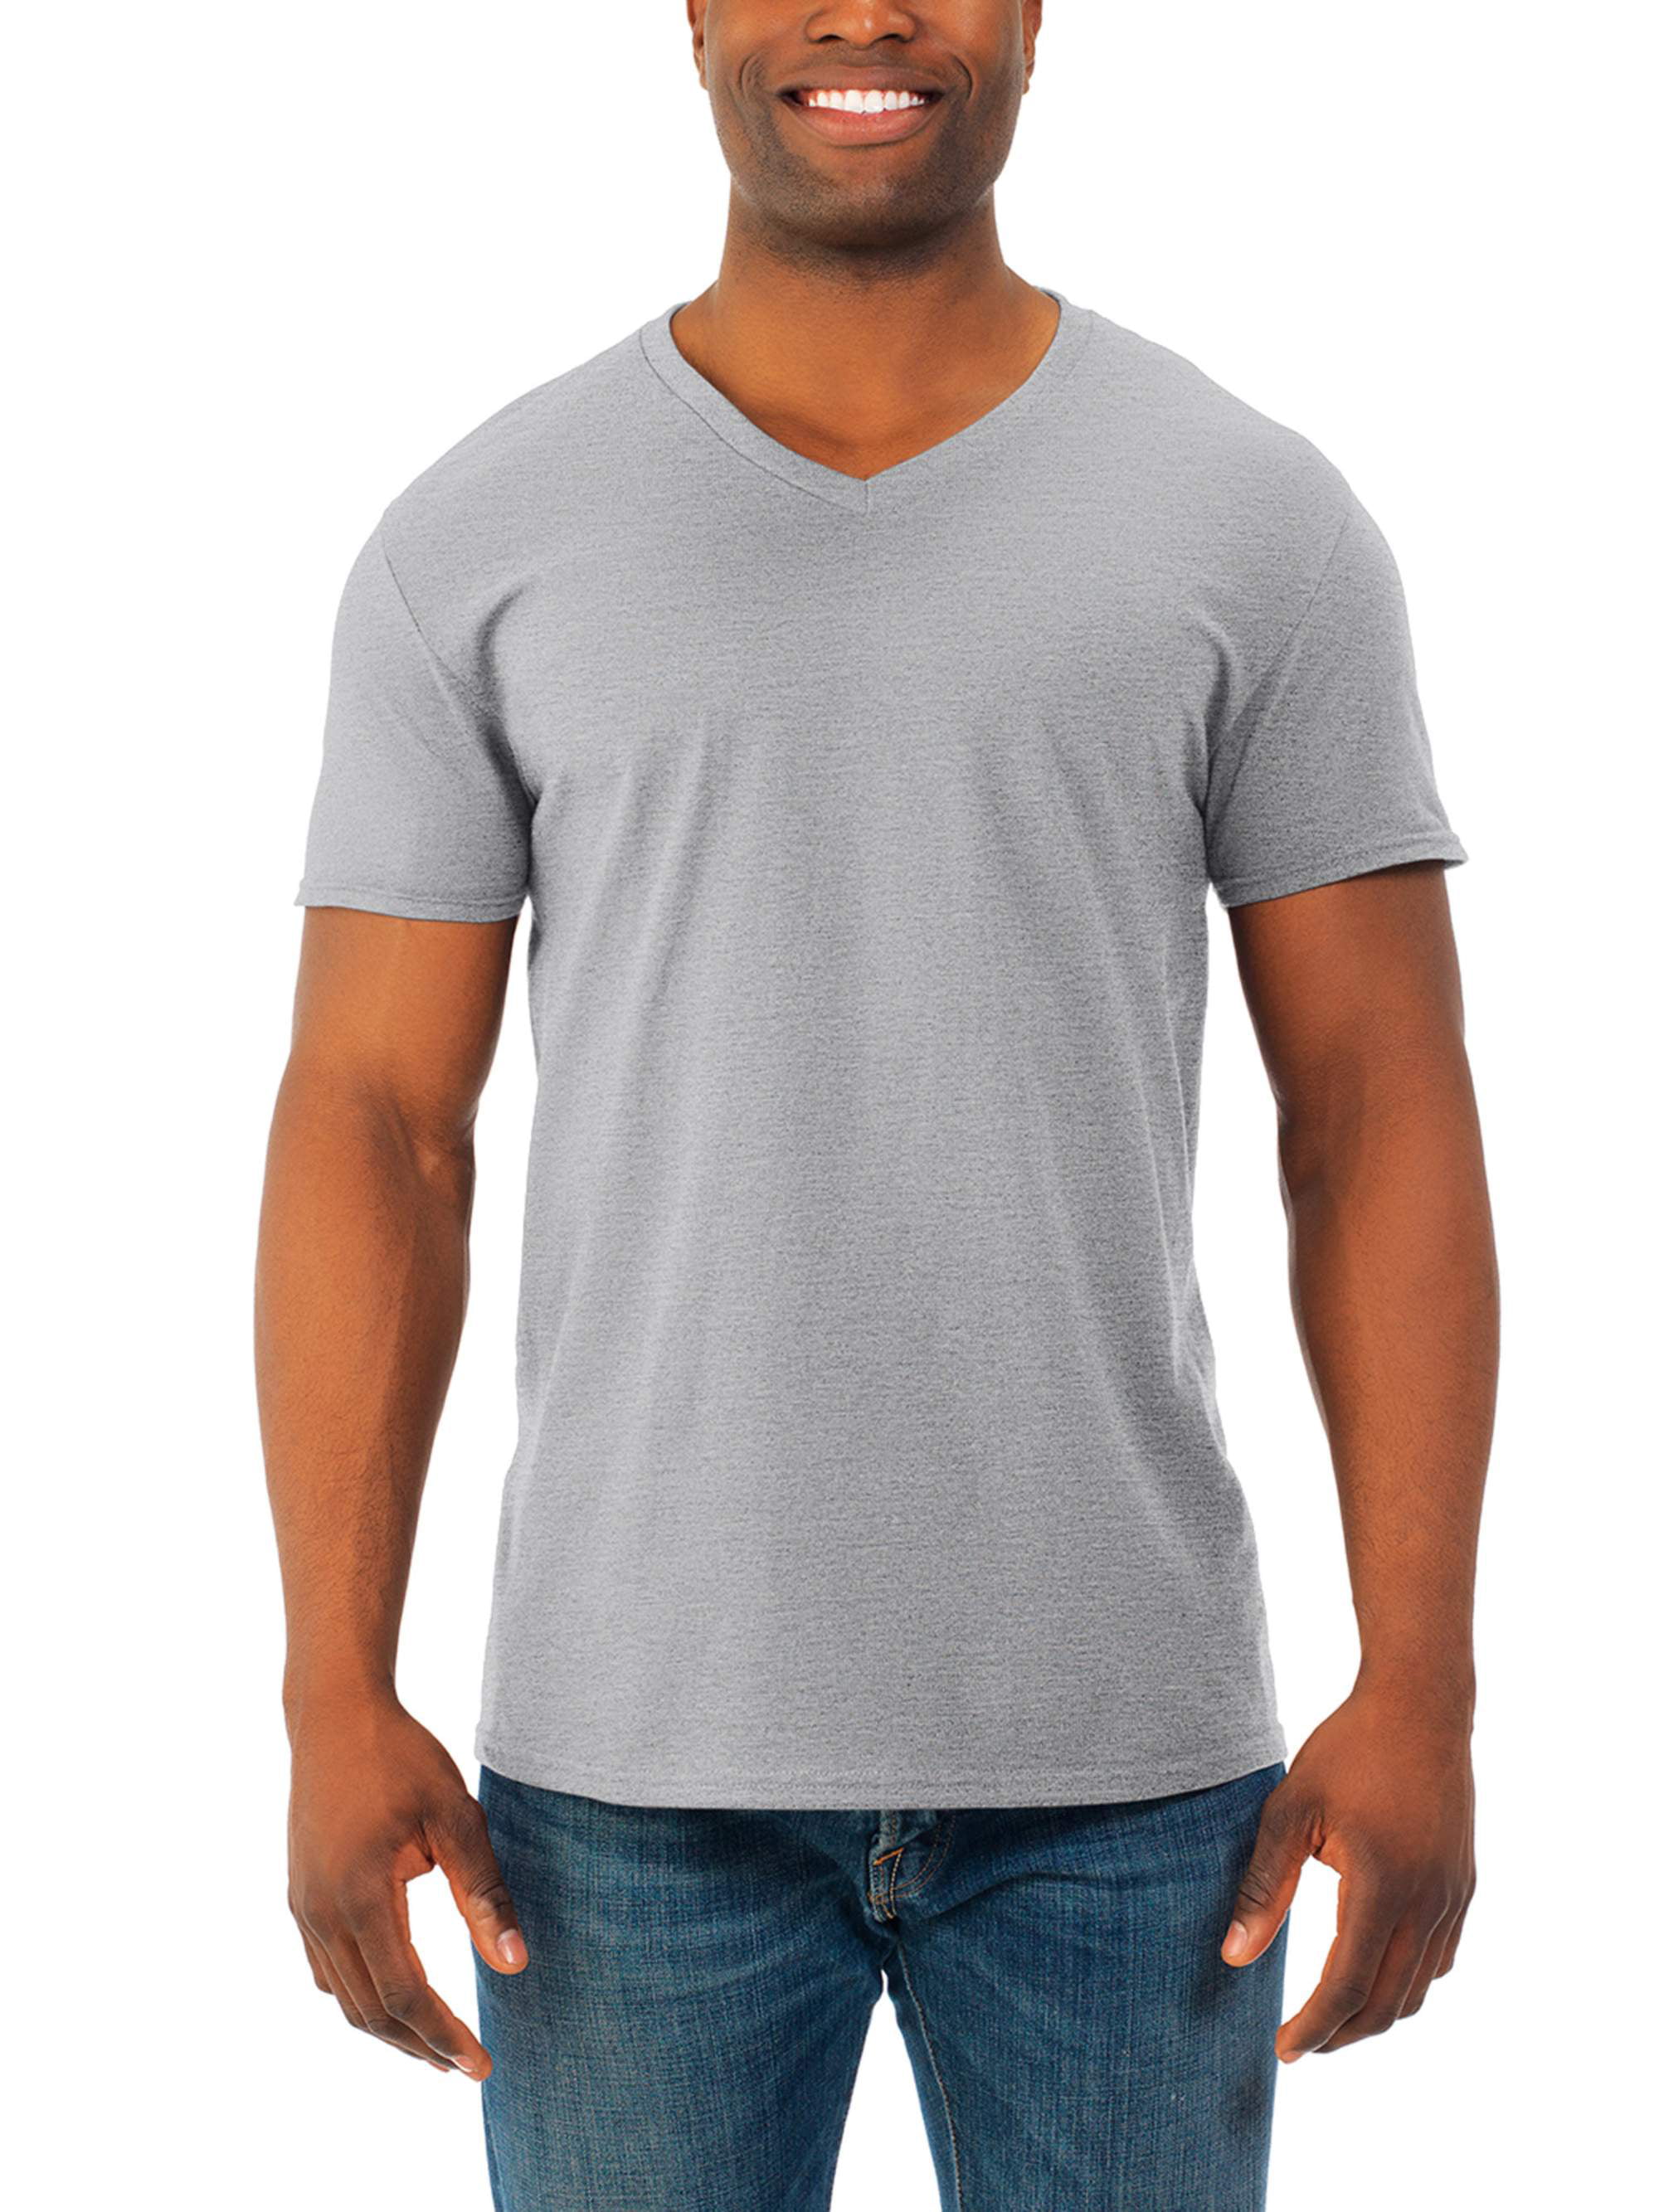 Mens' Soft Short Sleeve Lightweight V Neck T Shirt, 4 Pack - Walmart.com